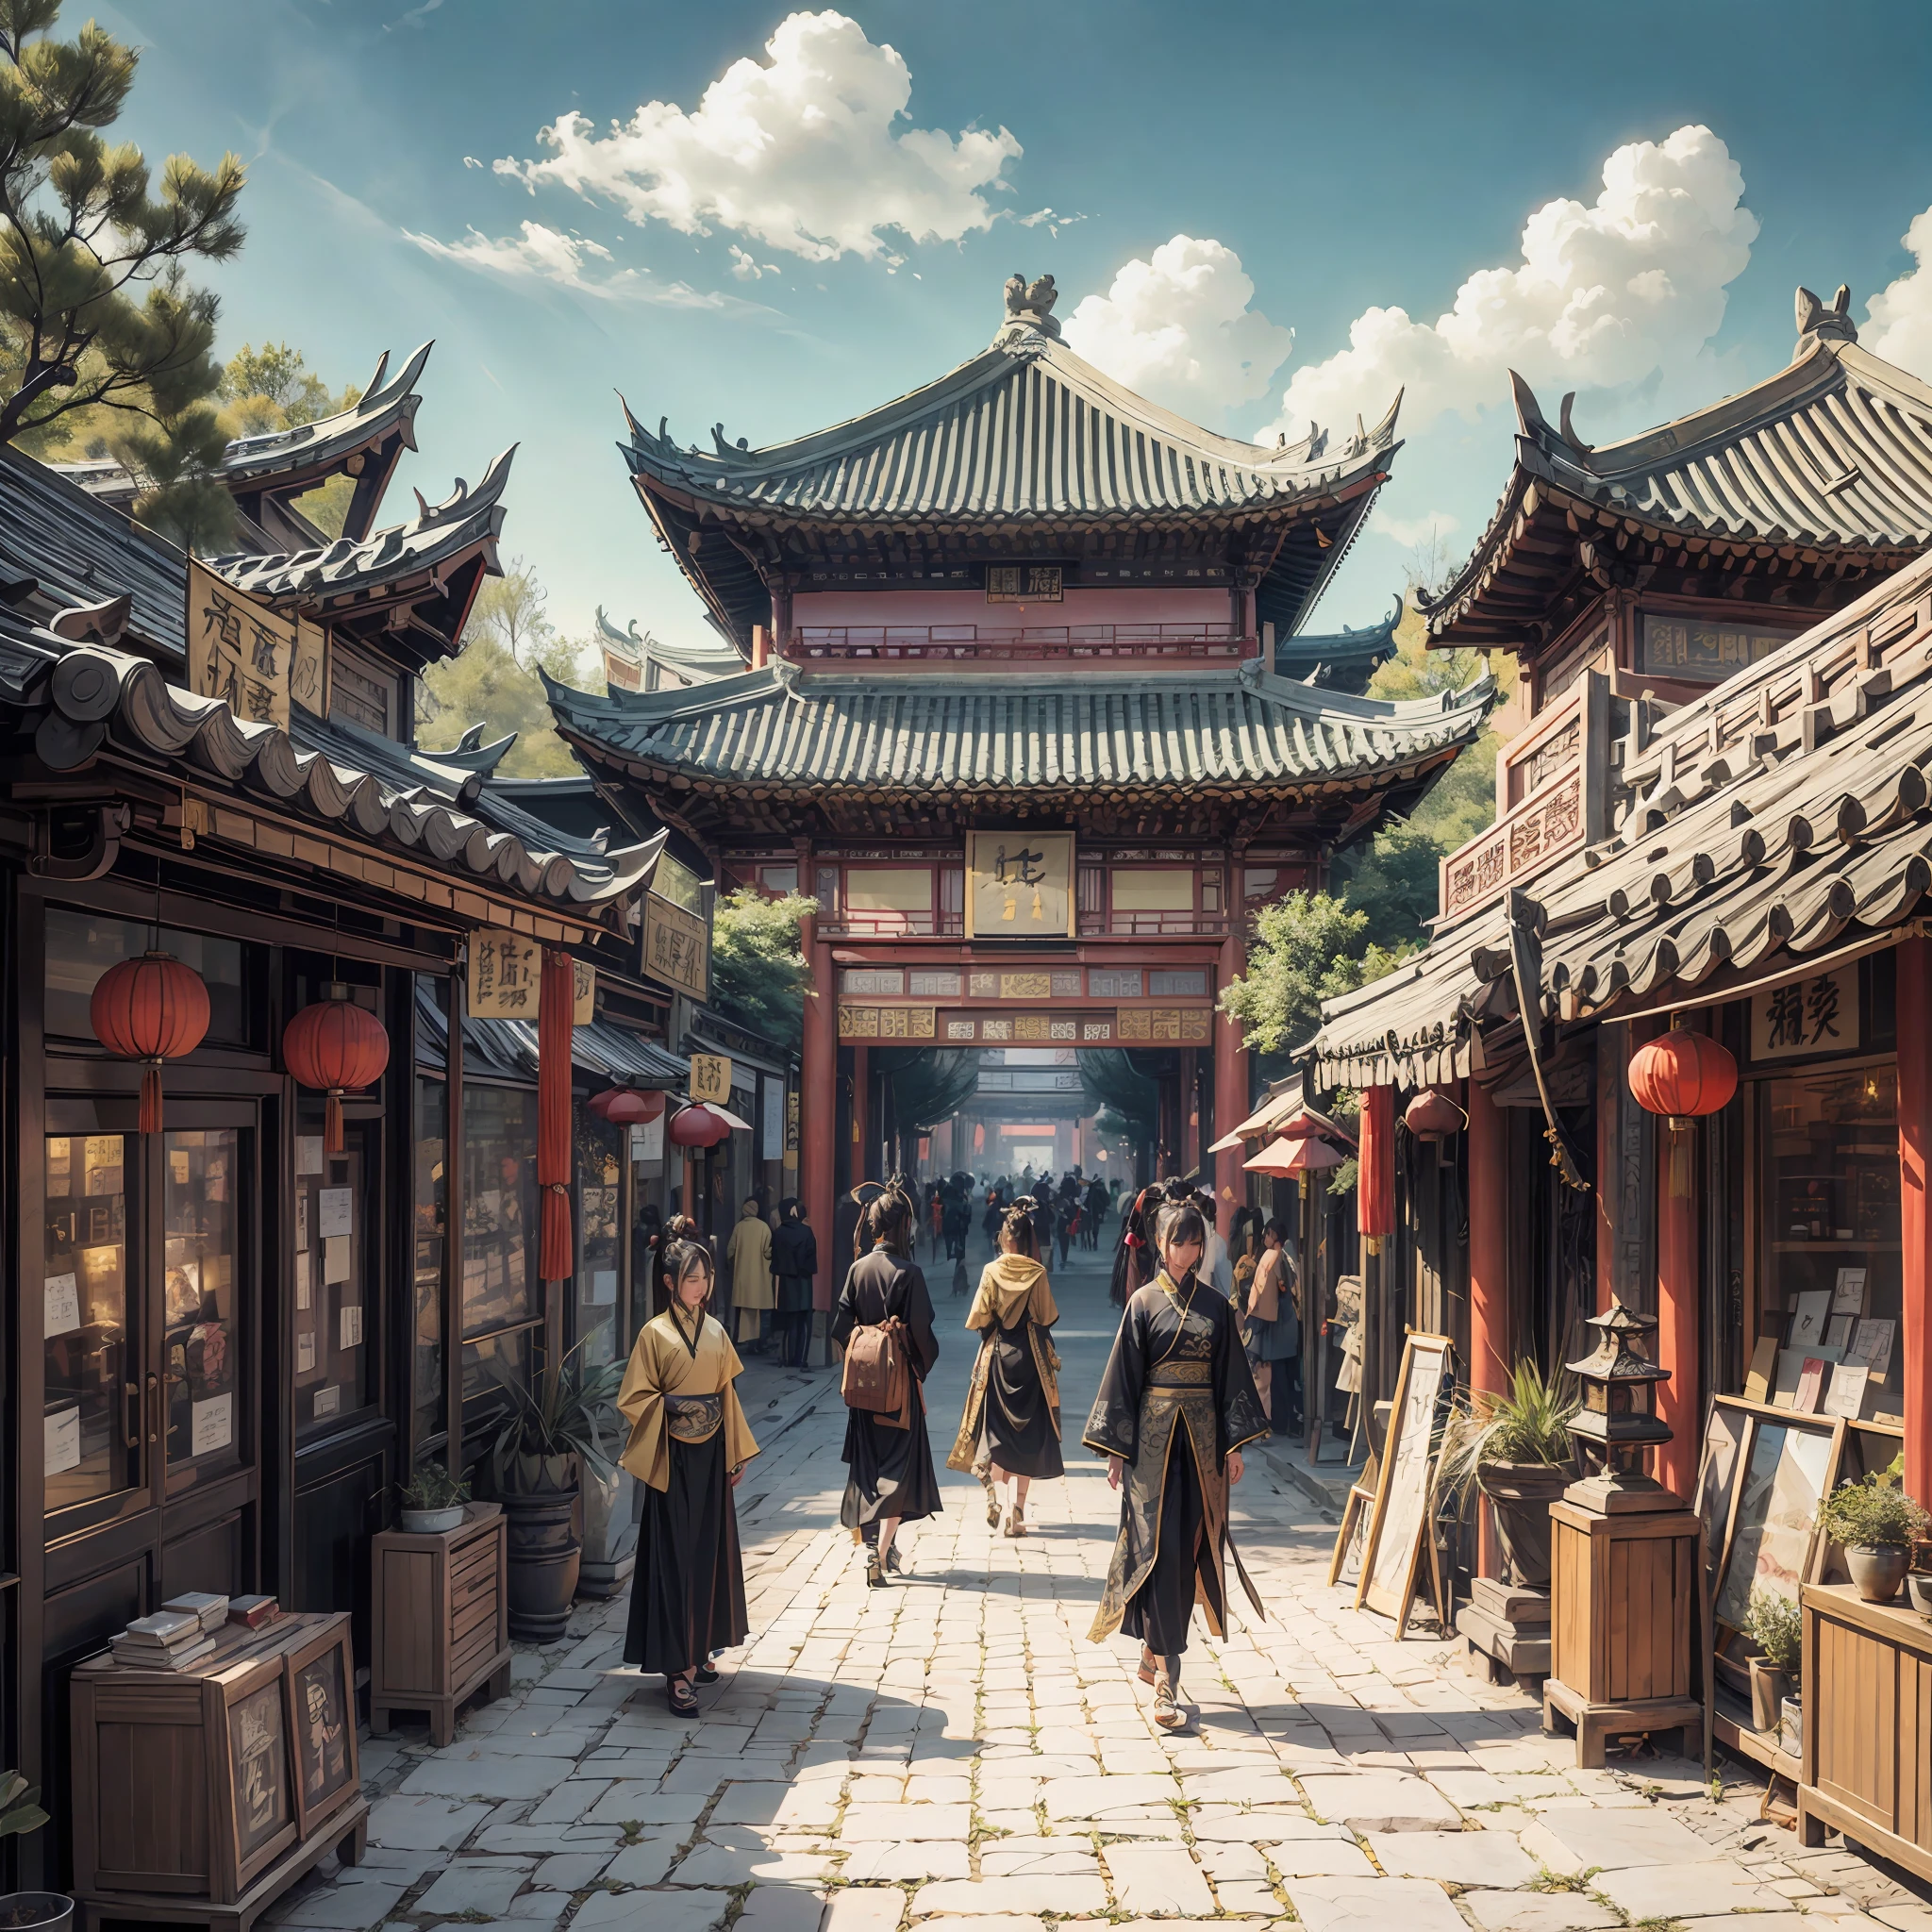 場面非常盛大，驚人的細節，中國古代，長安，唐朝，視野開闊，一排排中國古建築，兩邊都是寬闊的街道。艺术站的时尚潮流，現實與幻想的藝術風格，豐富細緻的風俗畫，深金色和黑色，中國龐克，平面設計